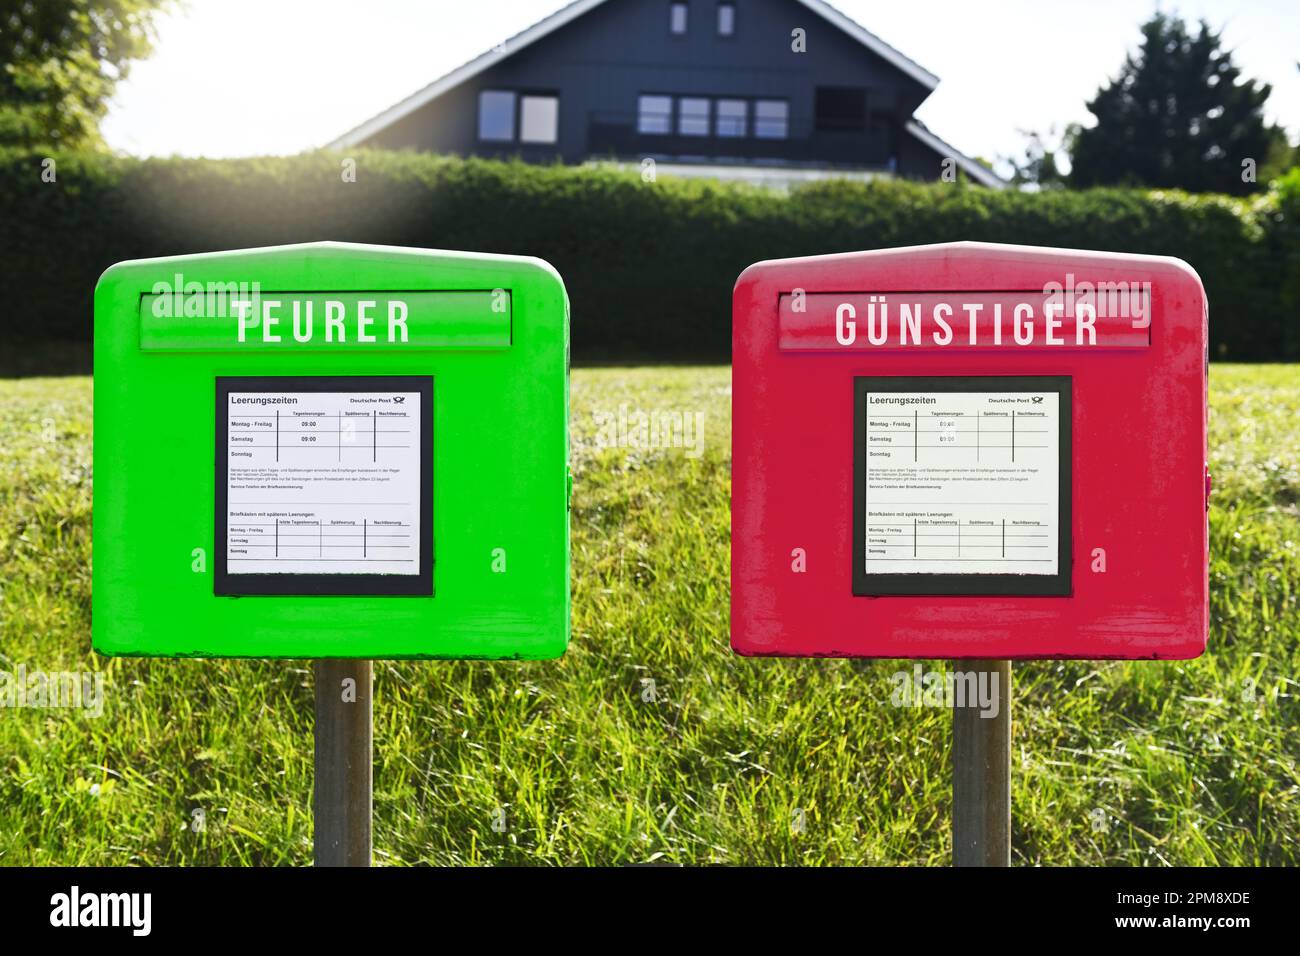 FOTOMONTAGE, Grüner und roter Briefkasten mit Aufschrift teurer und günstiger, Symbolfoto für eine Zwei-Klassen-Briefzustellung Foto de stock